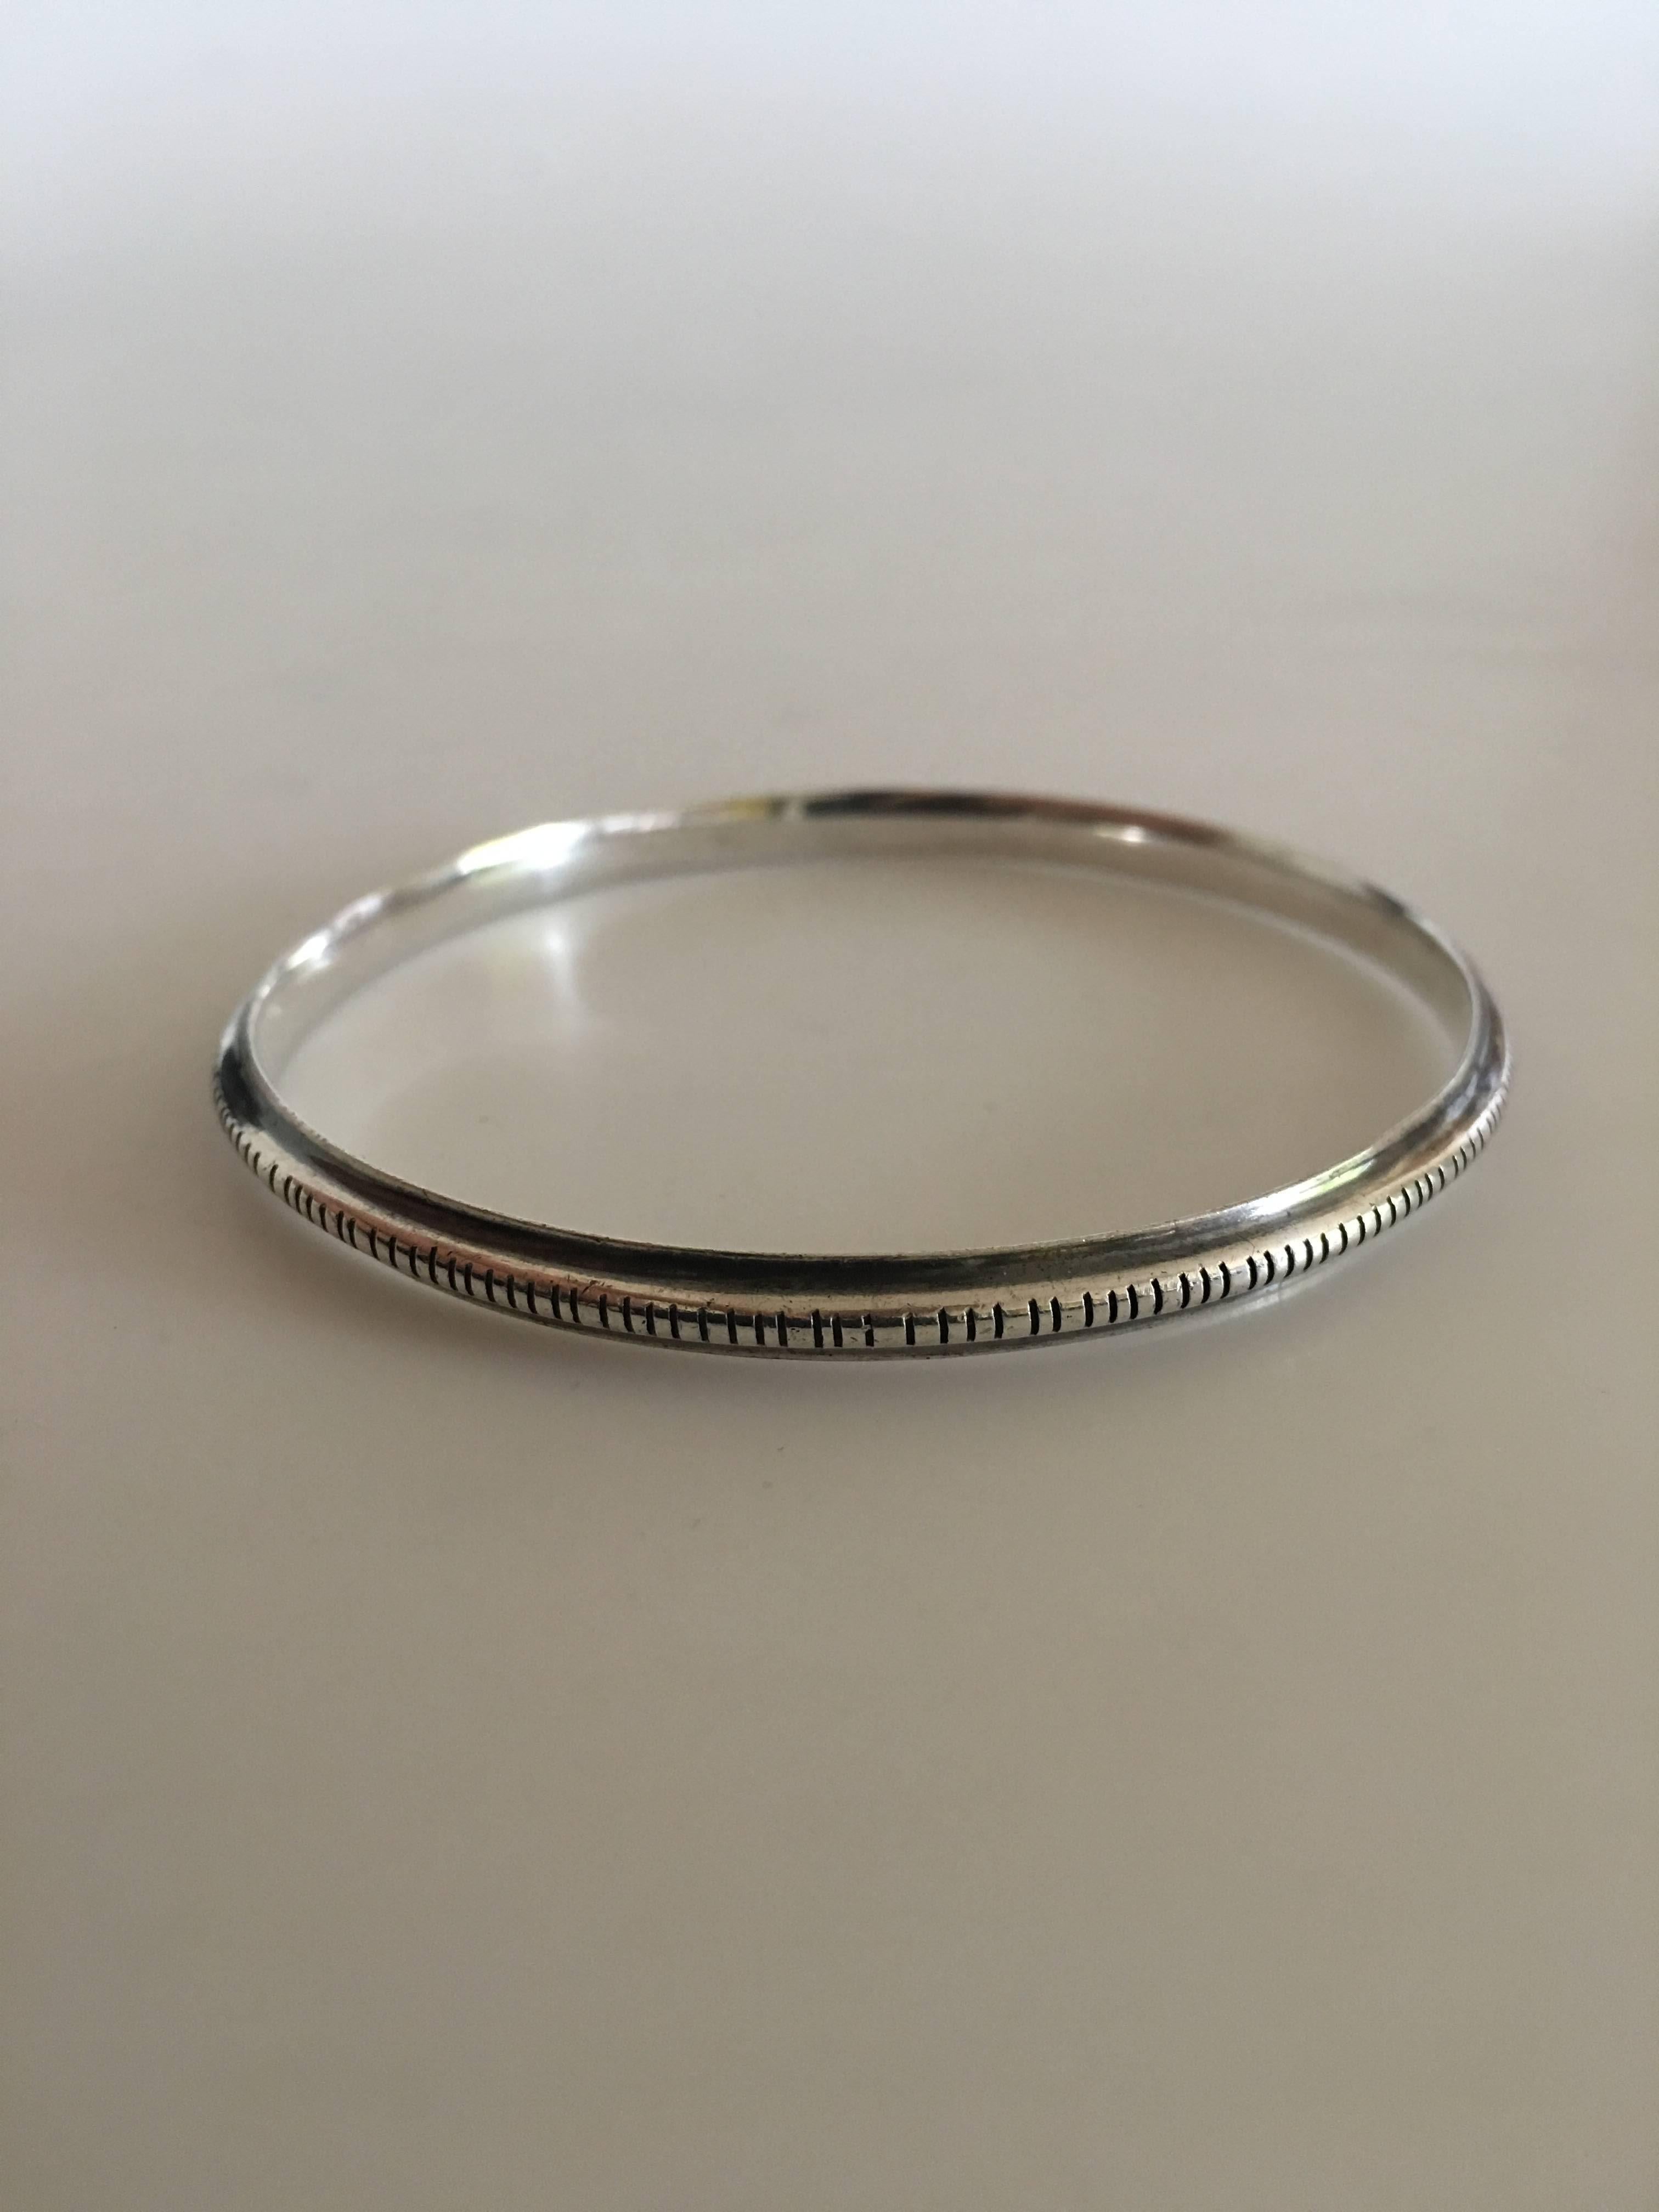 Hans Hansen Sterling Silver Bangle Bracelet No. 209. Measures 6.1 cm Inner Diameter (2 13/32